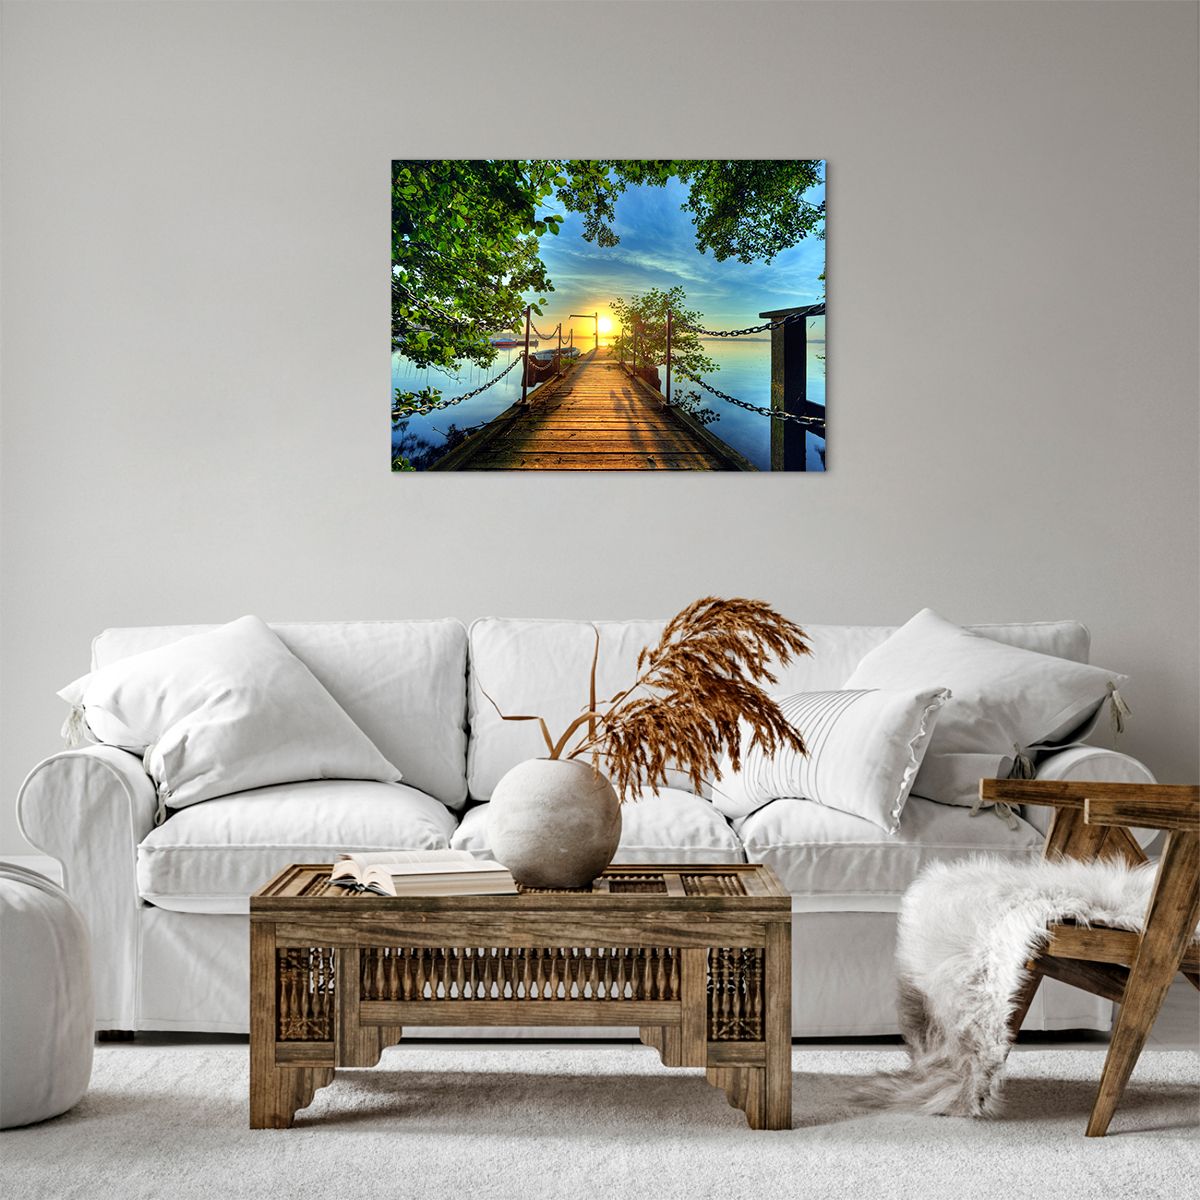 Bild auf Leinwand Landschaft, Bild auf Leinwand See, Bild auf Leinwand Segelboot, Bild auf Leinwand Holzbrücke, Bild auf Leinwand Baum